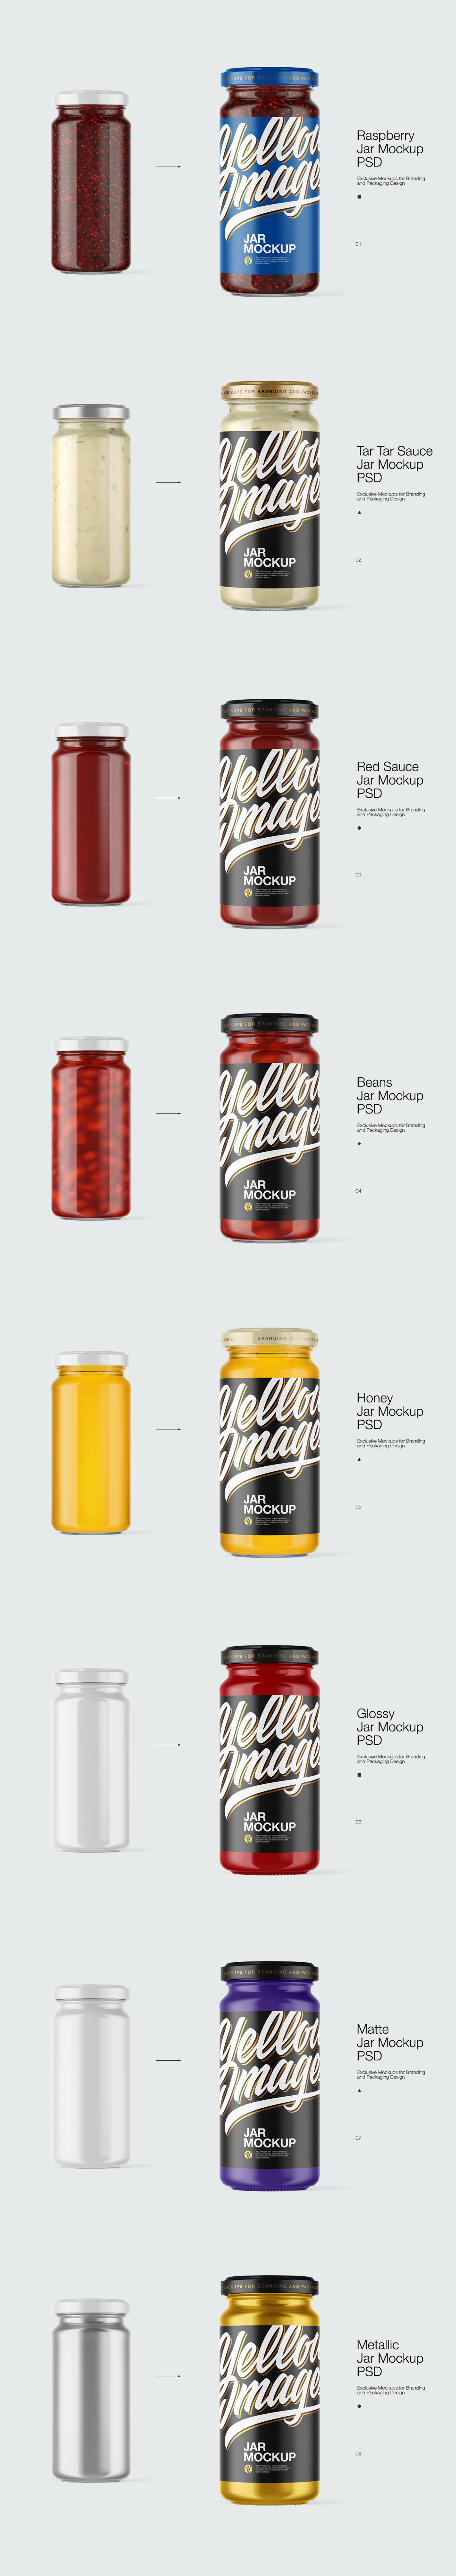 Mockup mockups jarmockup Pack package 3D design branding  sauce preserved